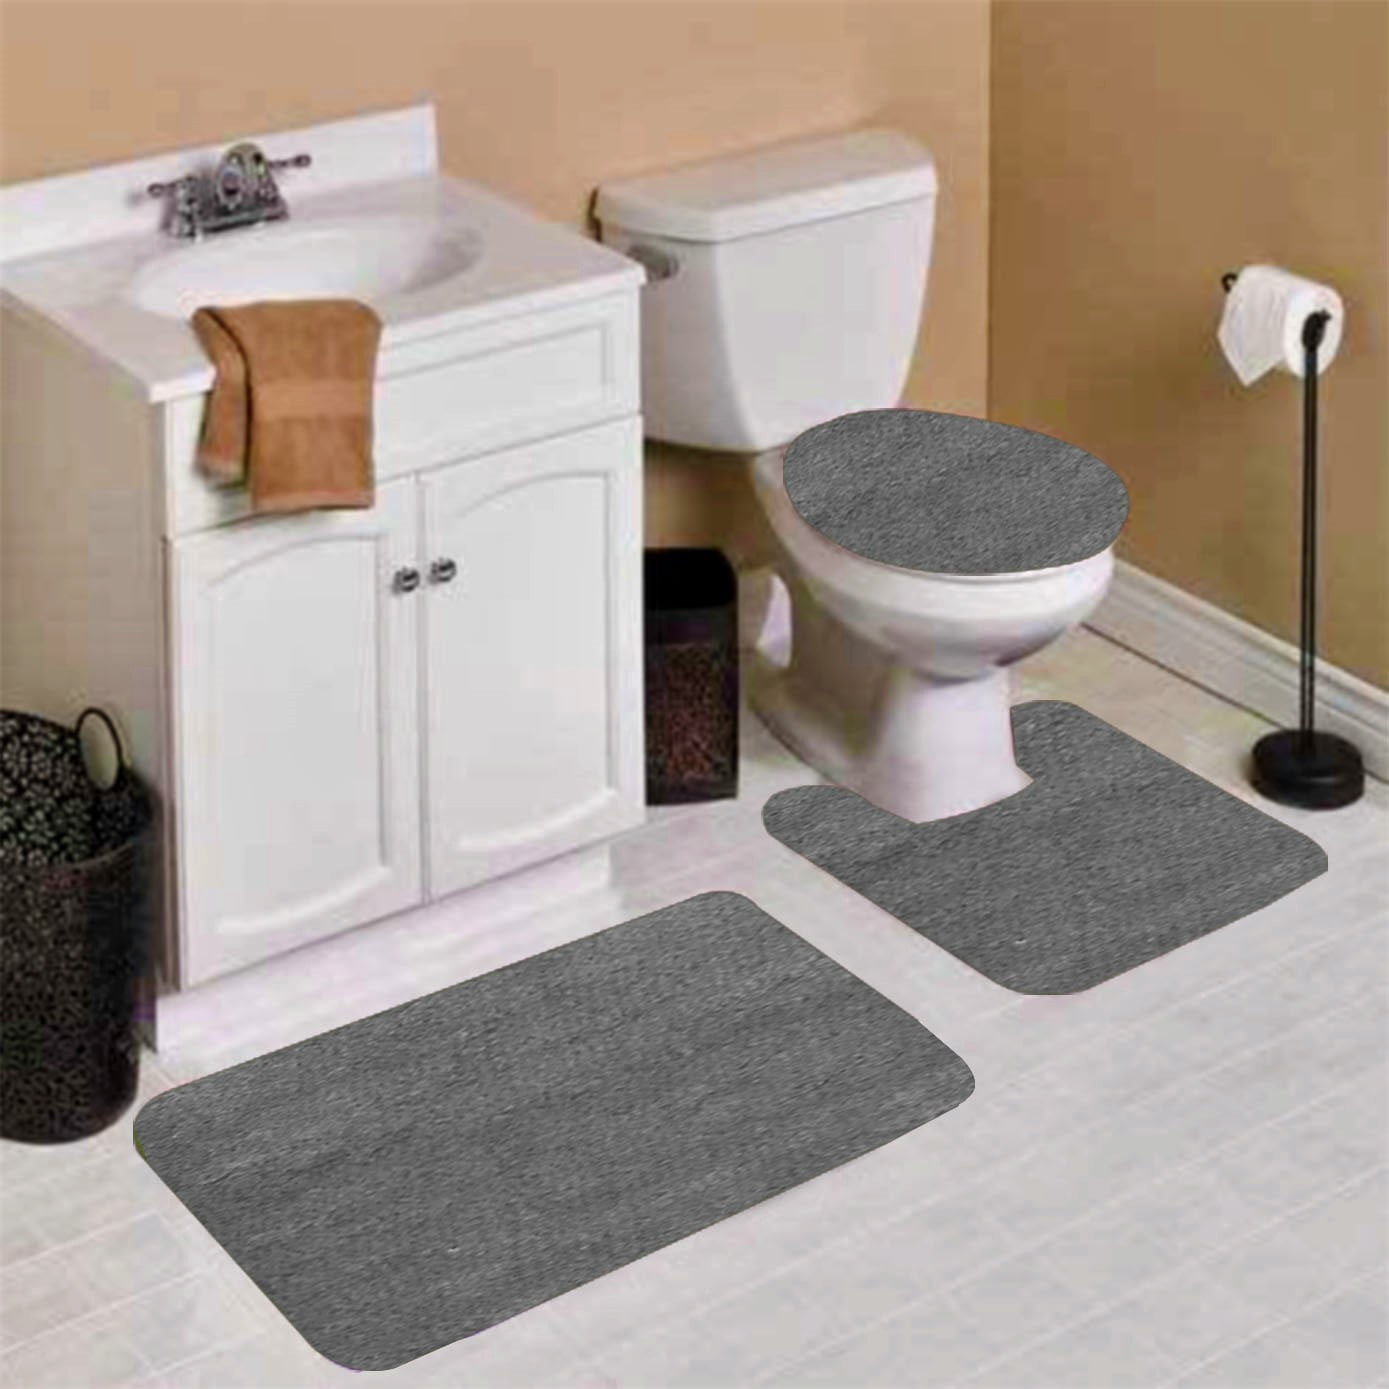 Details about   Pebbles Bath Mat Memory Foam Pedestal Set Non Slip Soft Toilet Bathroom Rugs 2PC 